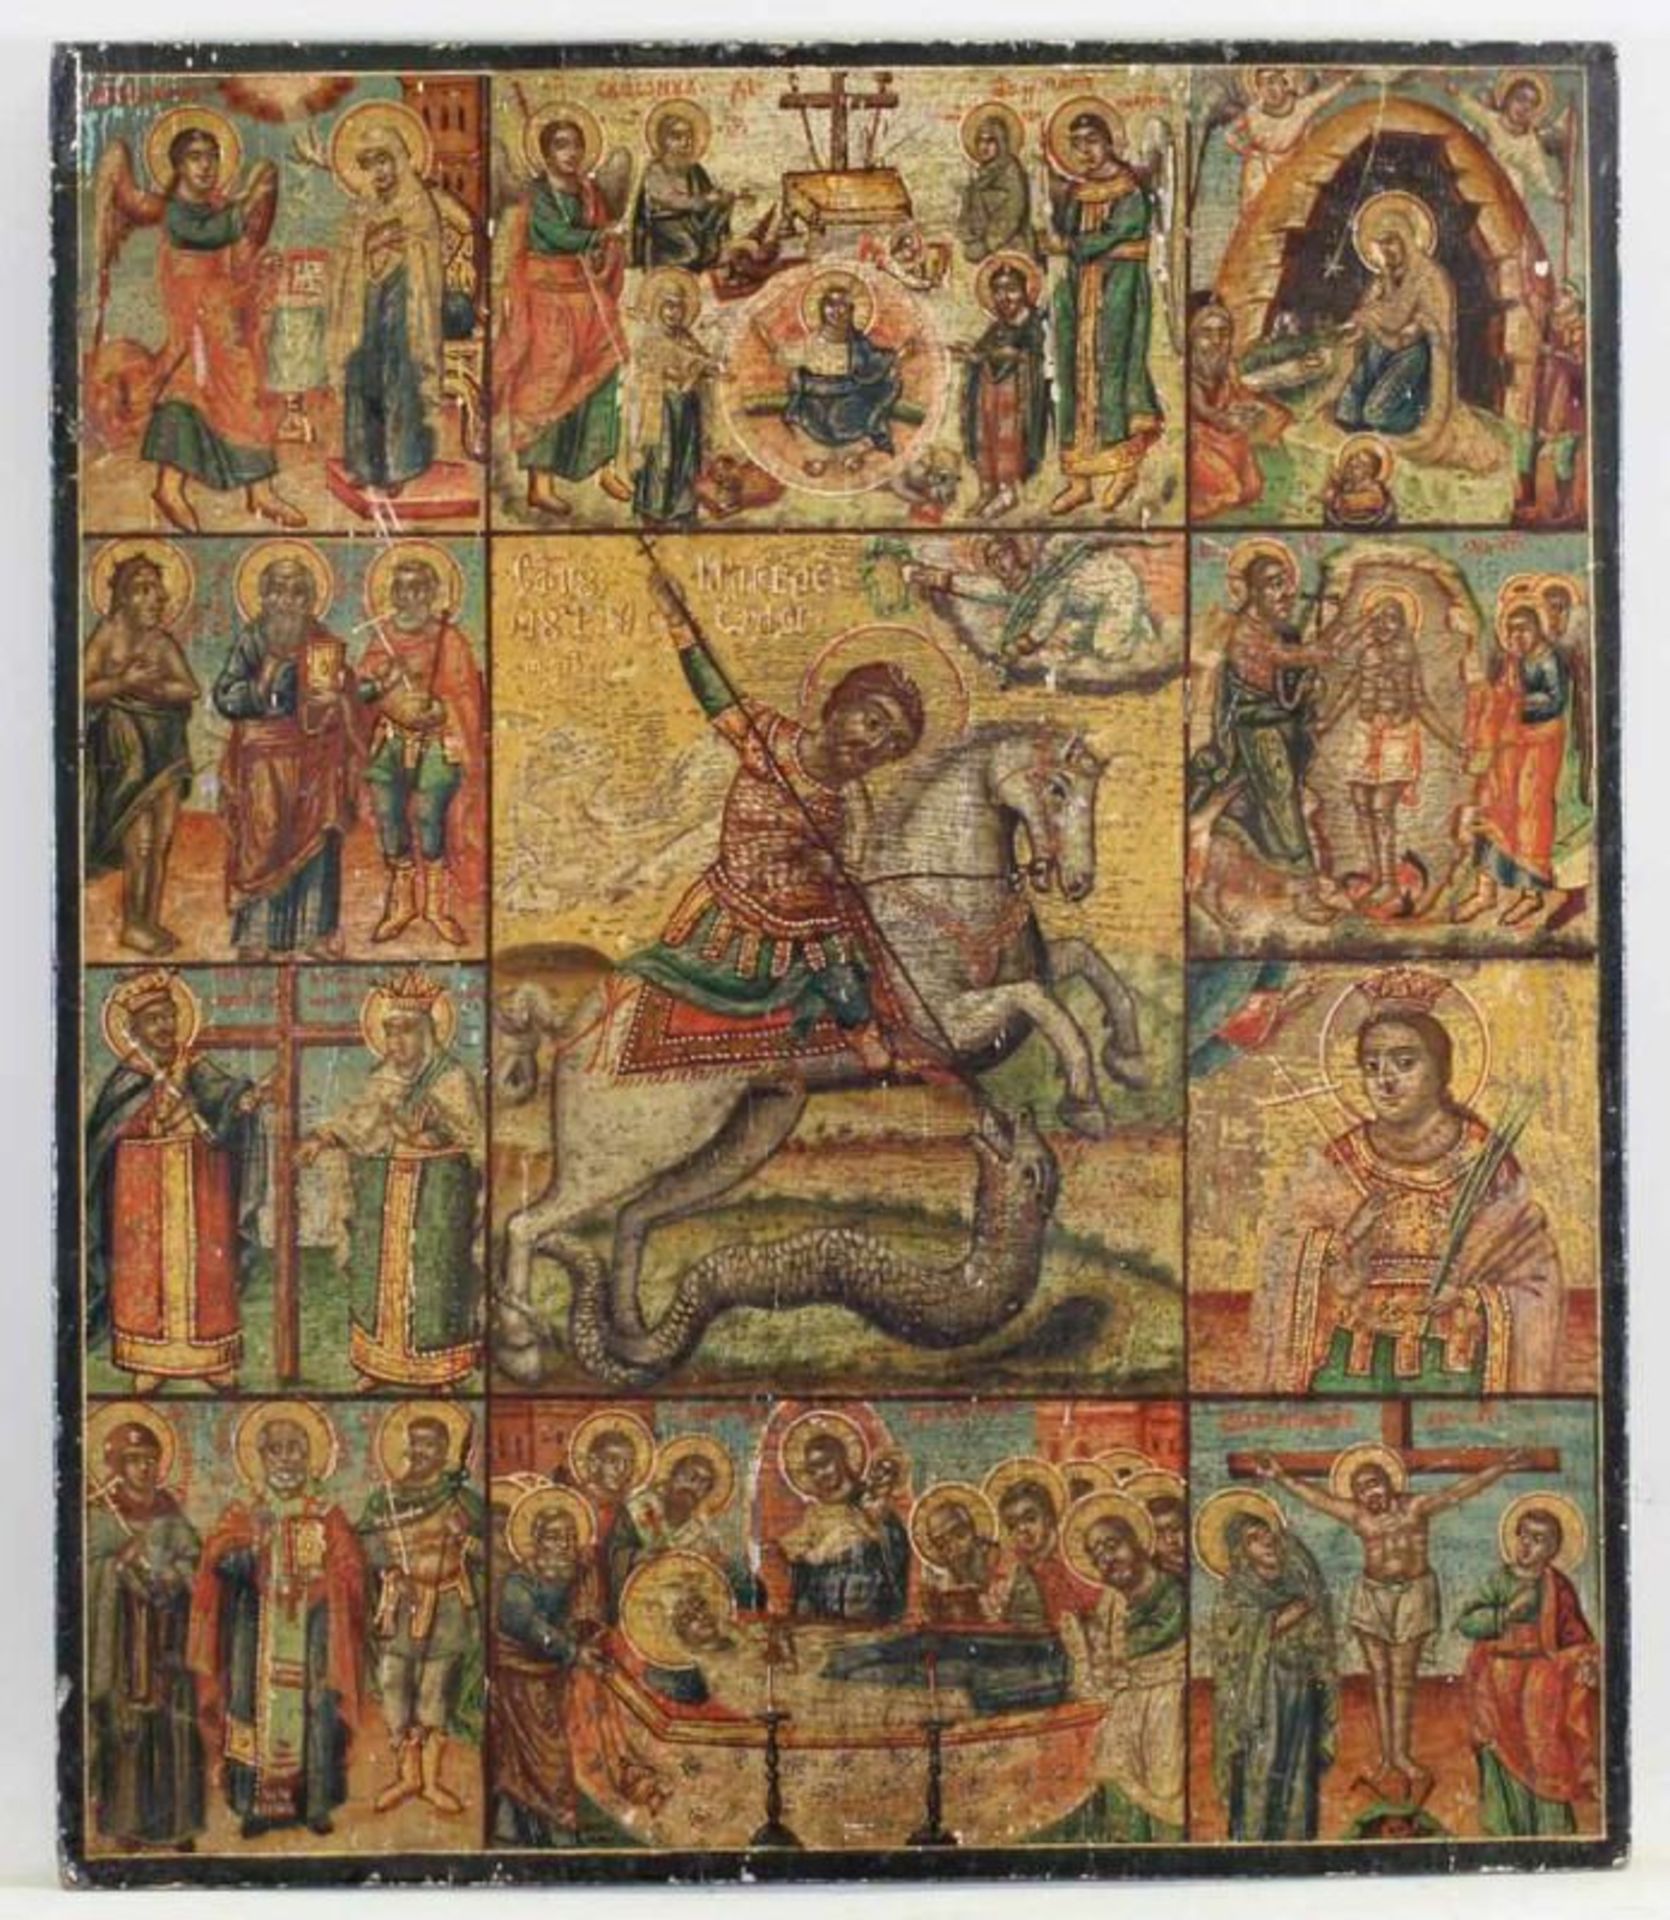 Festtagsikone, Tempera auf Holz, im Zentrum der "Heilige Georg den Drachen tötend", umgeben von 10